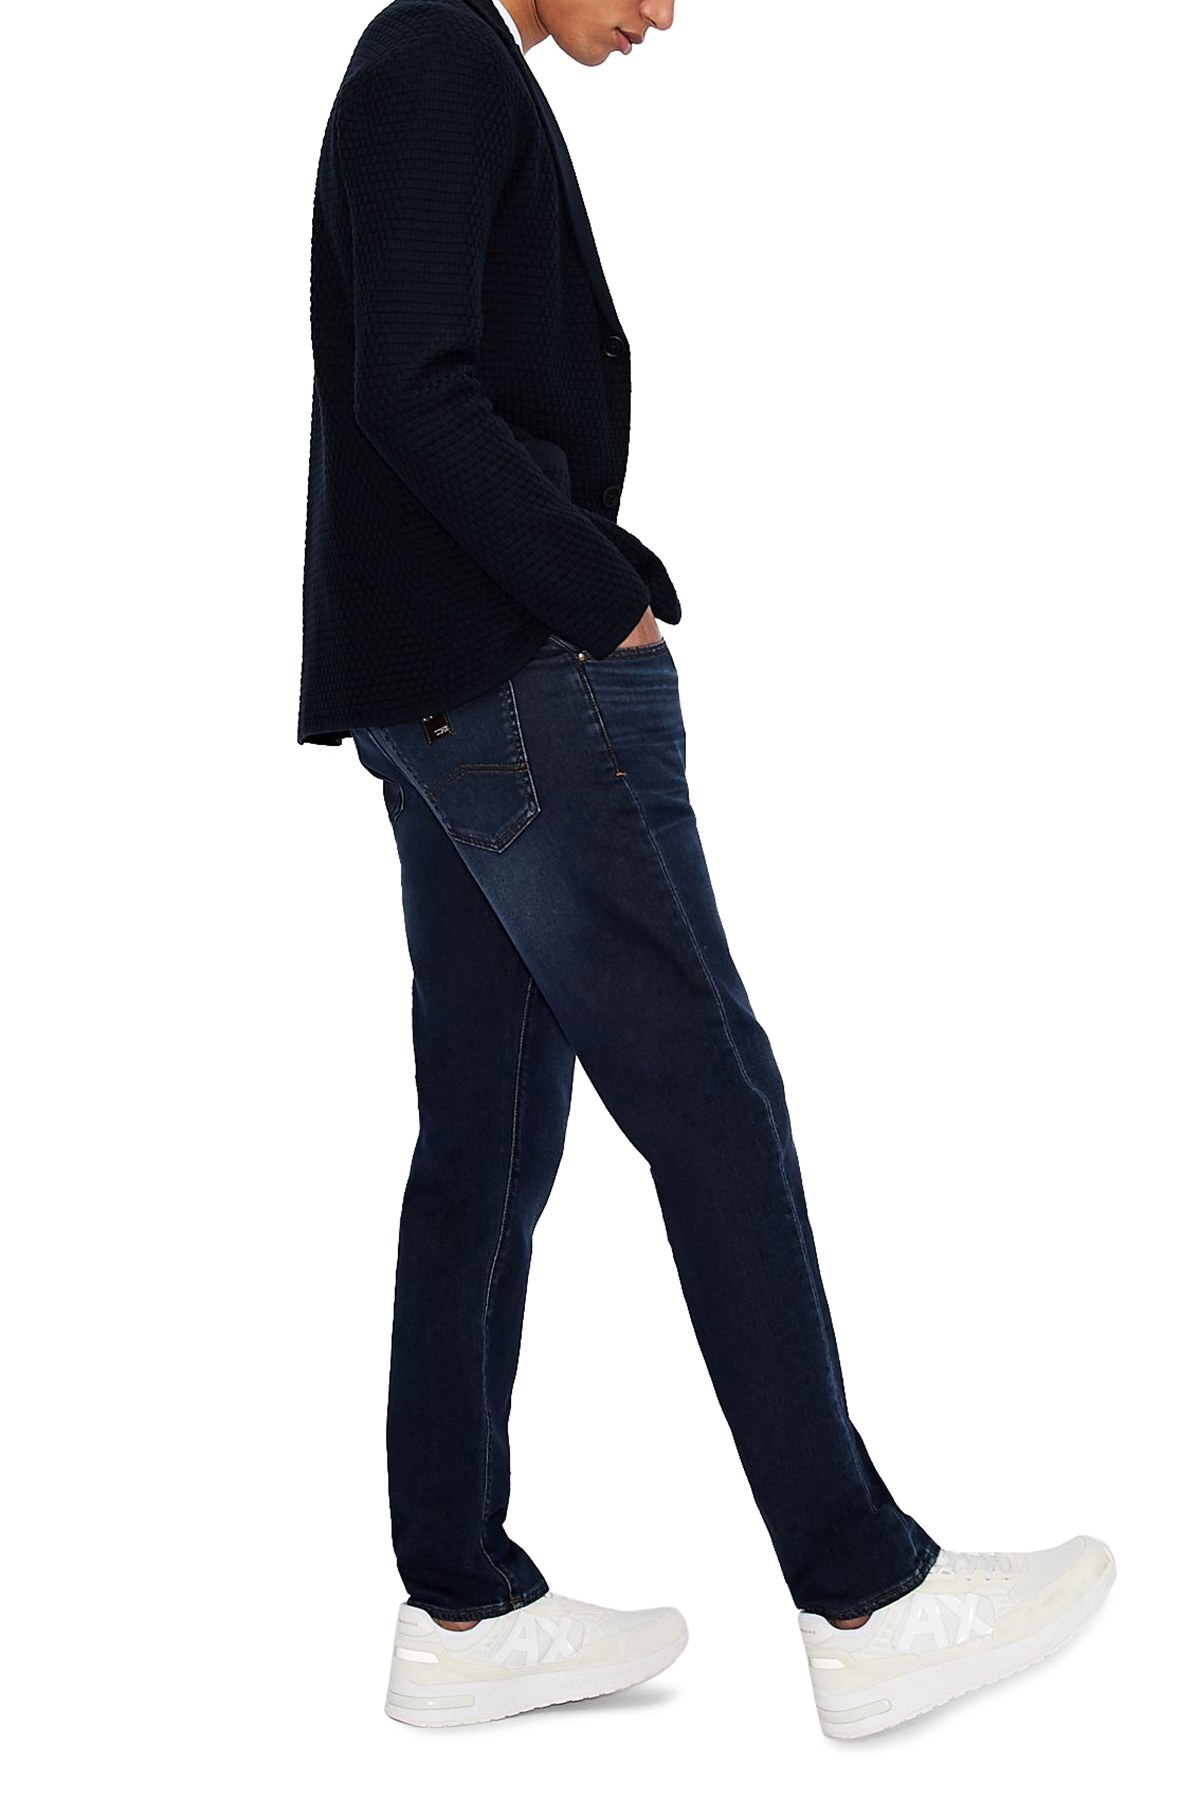 Armani Exchange Pamuklu Slim Fit J13 Jeans Erkek Kot Pantolon 3KZJ13 ZAQMZ 1500 LACİVERT